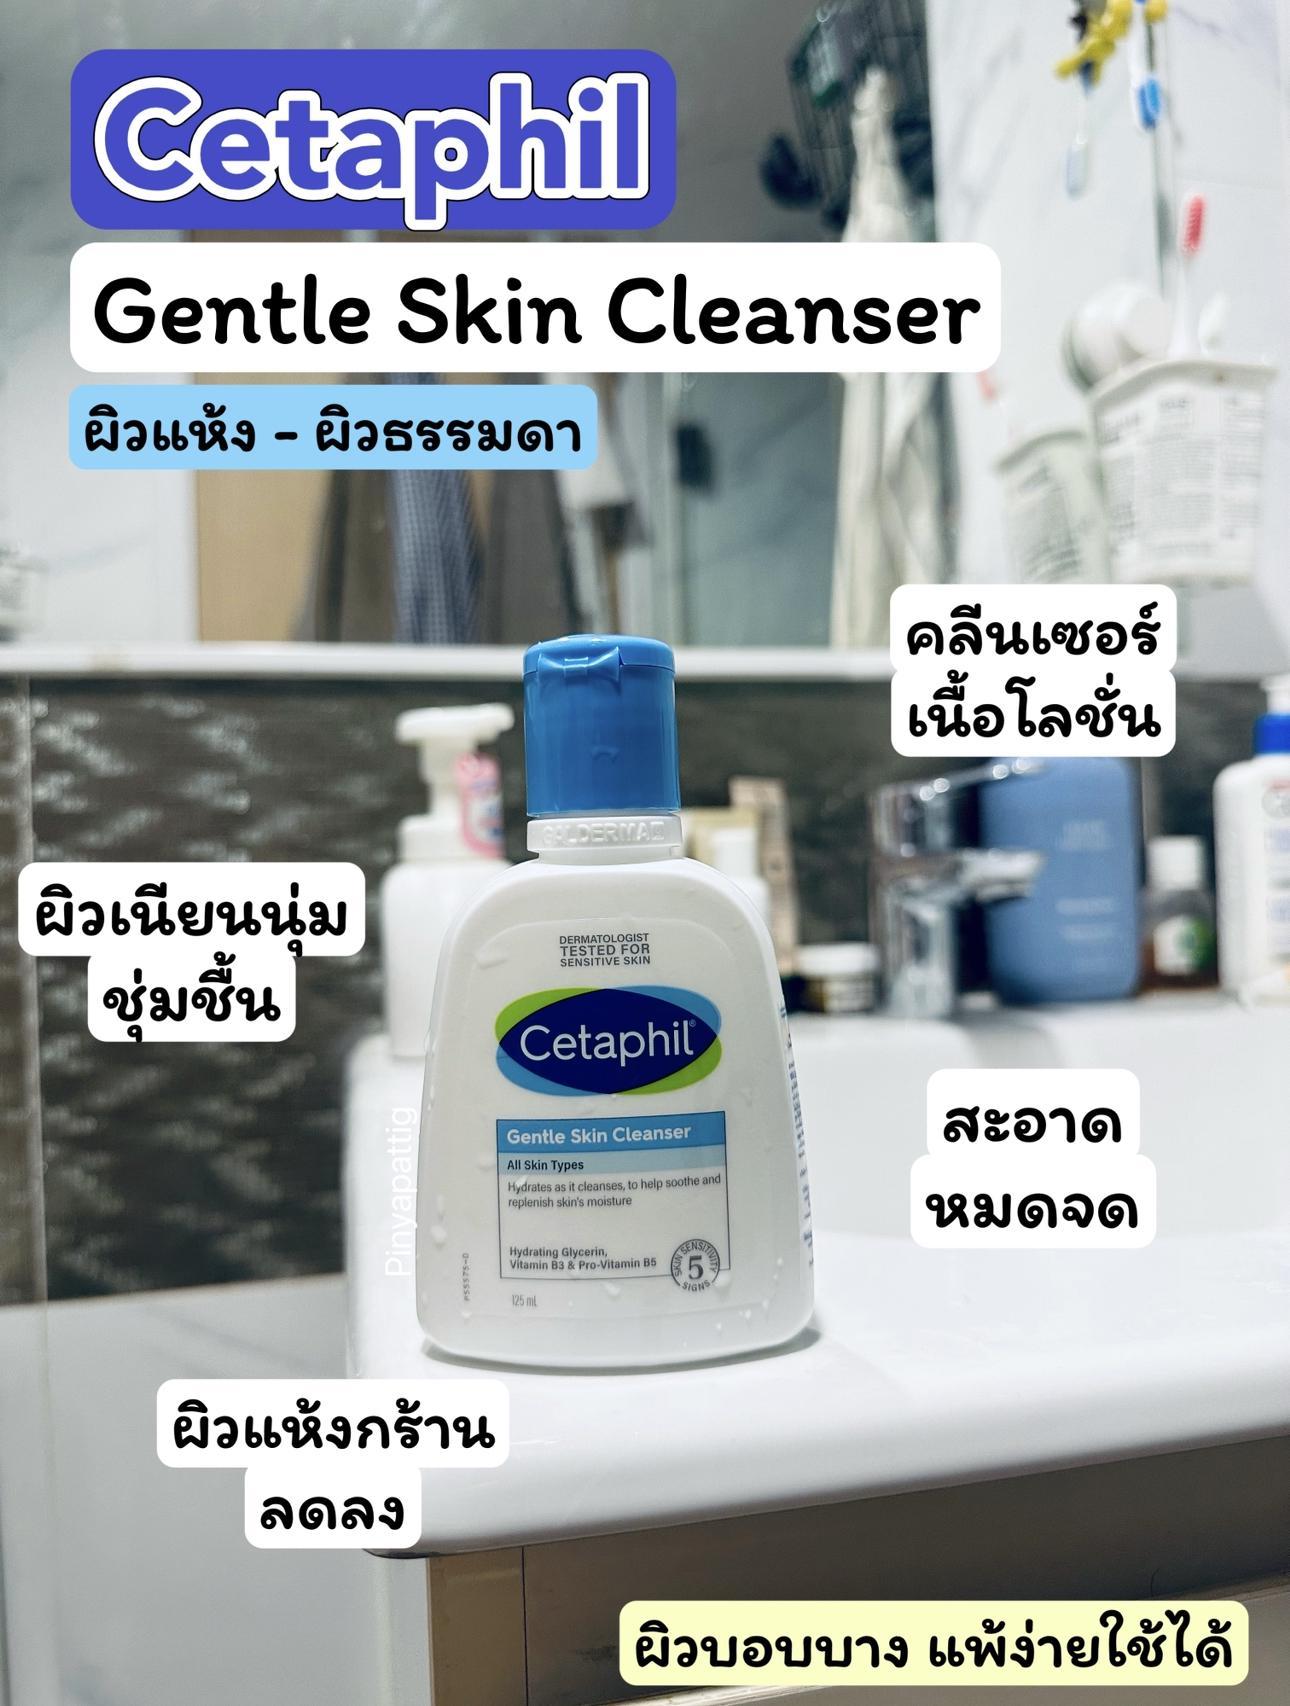 ภาพหน้าปก Cetaphil Gentle Skin Cleanser สำหรับคนเป็นสิวผิวแพ้ง่าย ที่:0